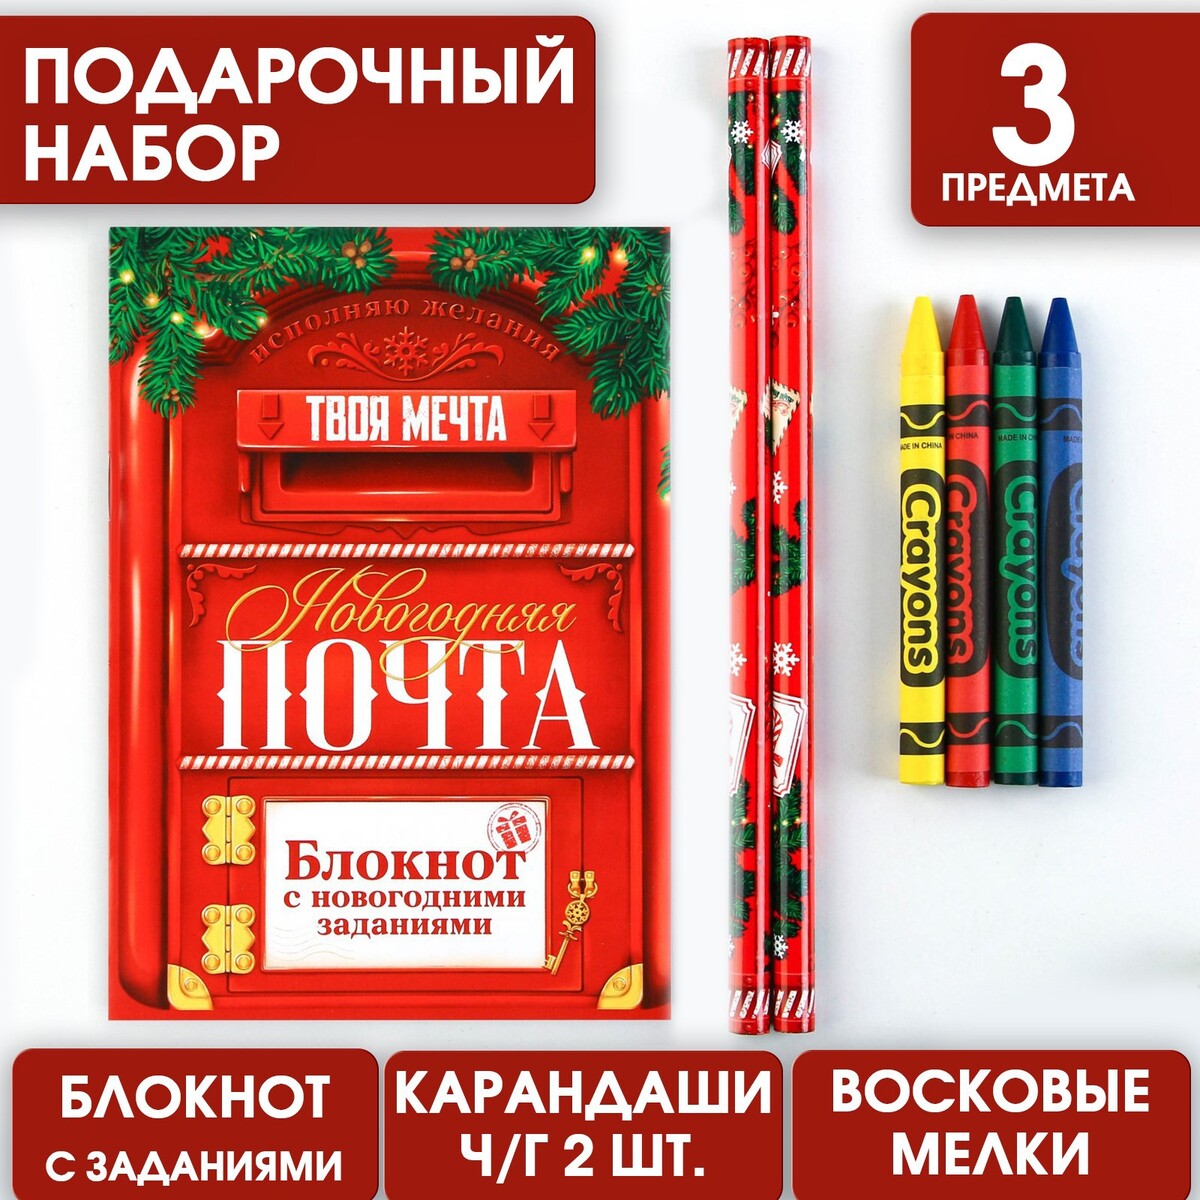 Подарочный новогодний набор: блокнот, карандаши ч/г 2 шт и восковые мелки